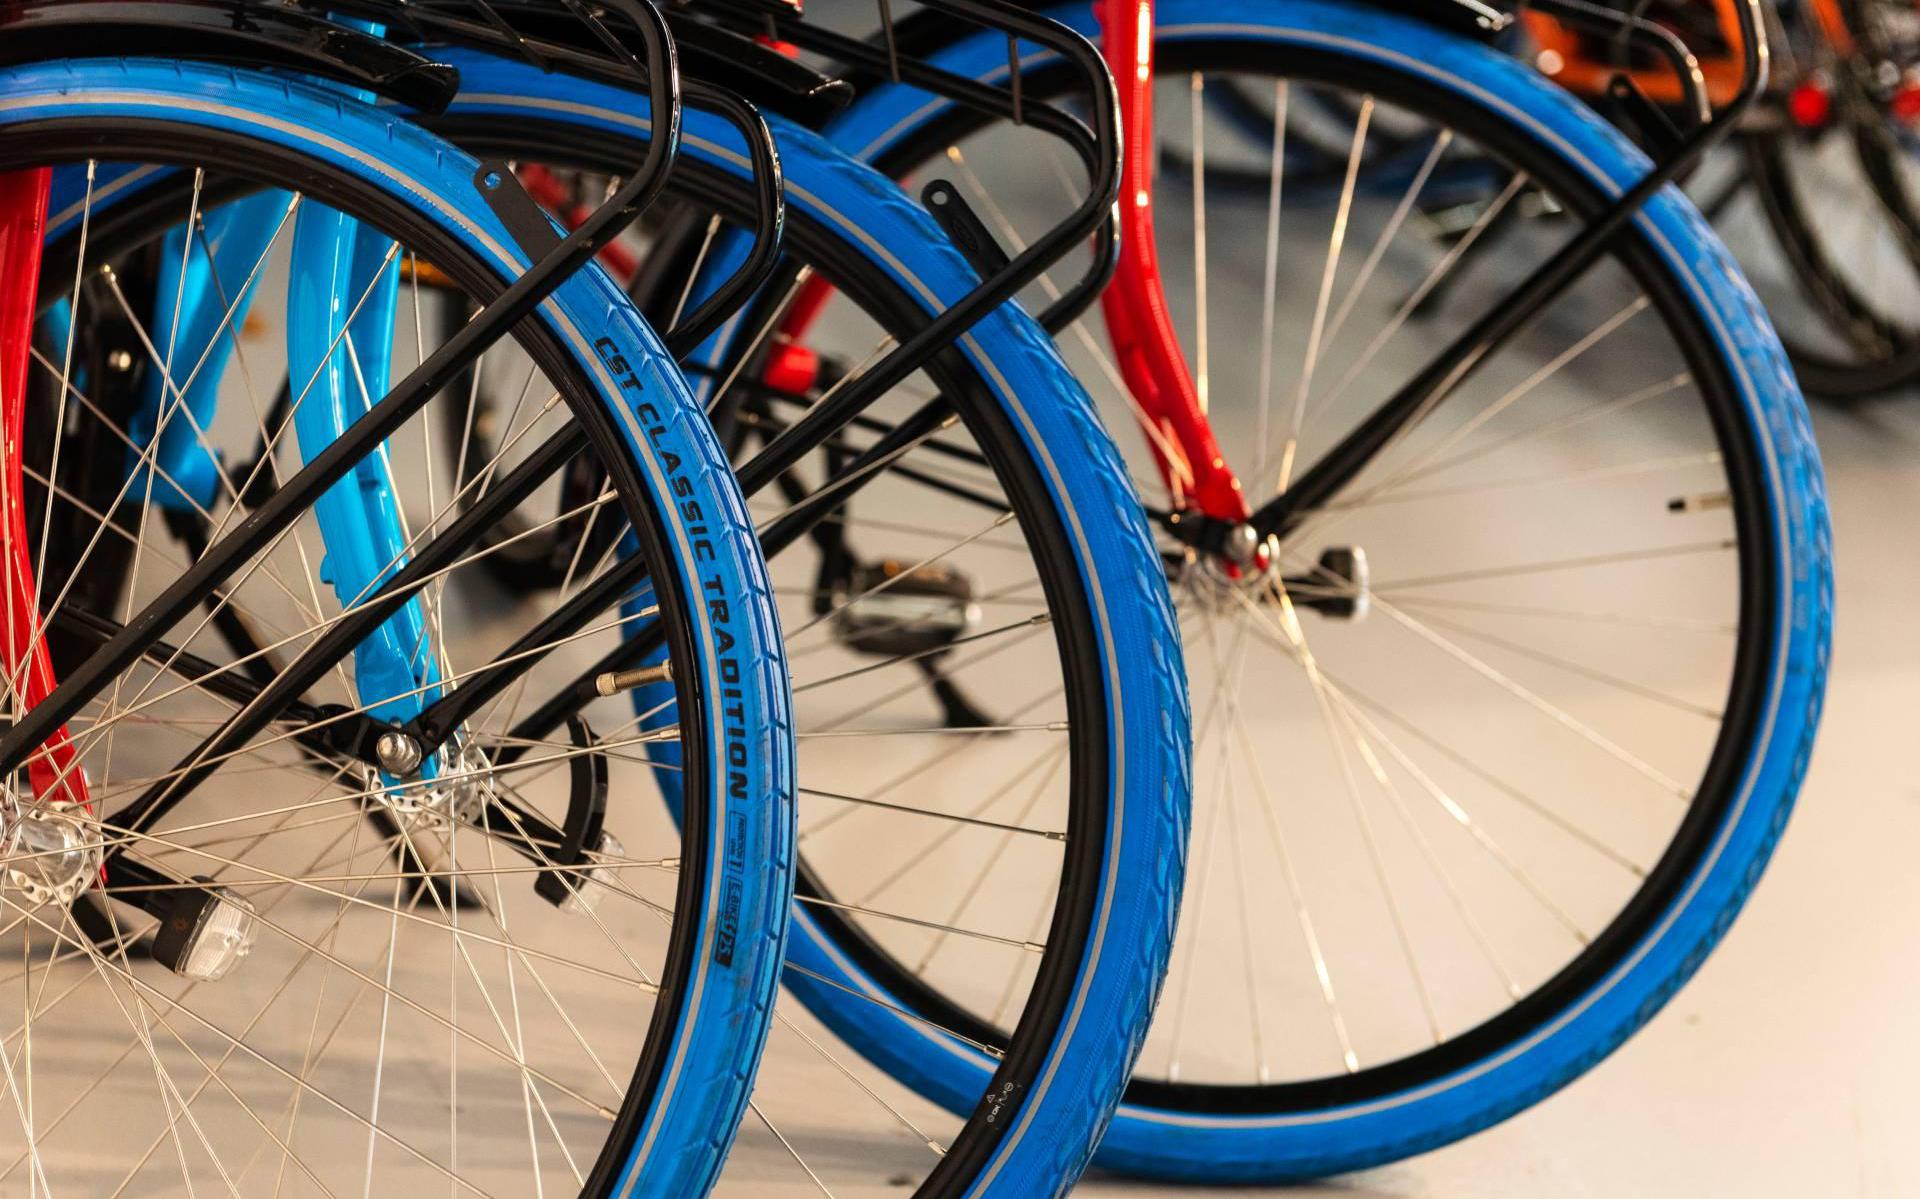 Swapfiets wil een verdere verduurzamingsslag maken door fietsonderdelen te repareren, hergebruiken, opknappen en recyclen